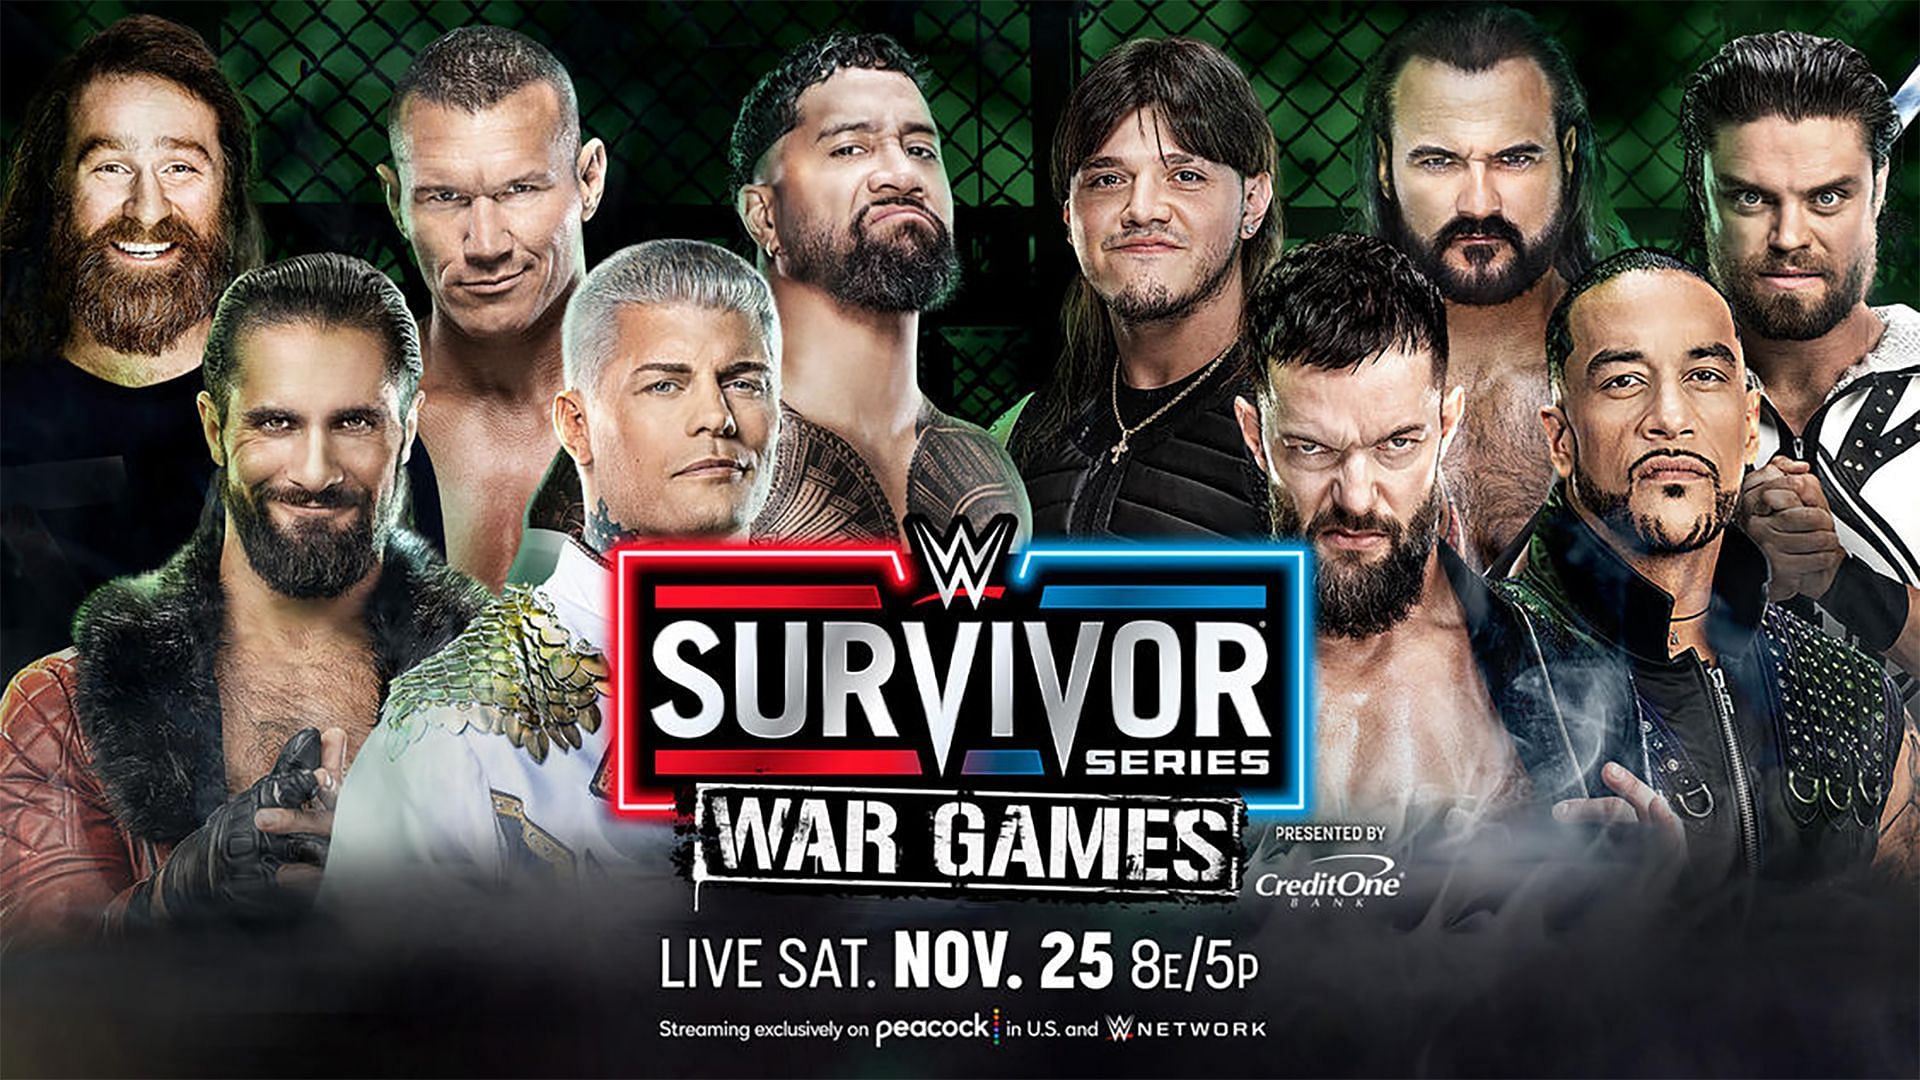 Team Rhodes vs. Team Judgment Day in WarGames at WWE Survivor Series